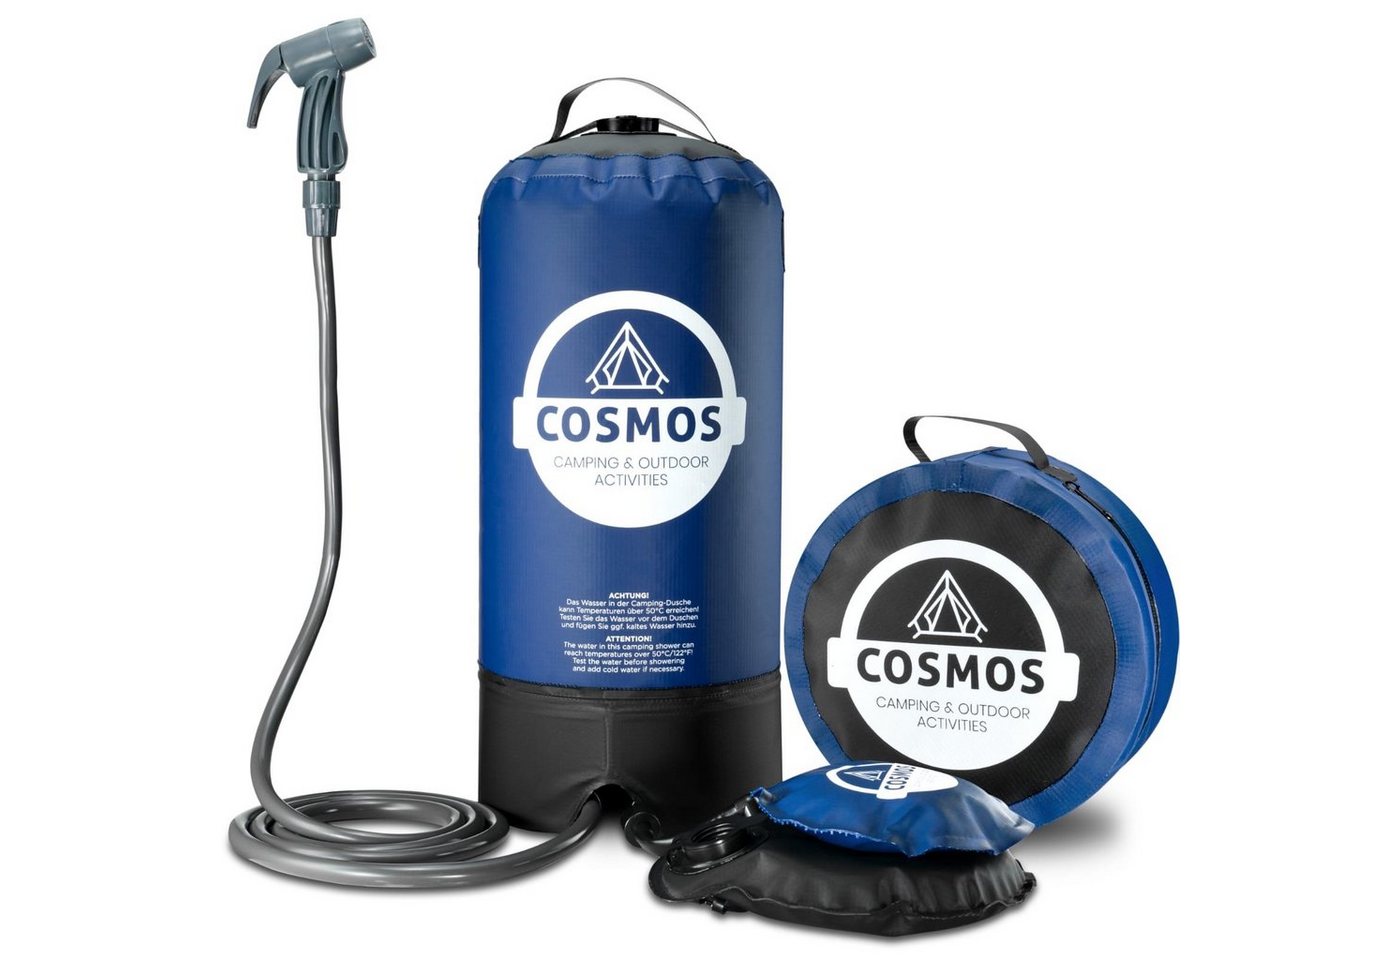 Cosmos Premium Products Gartendusche Cosmos Campingdusche - Tragbare Aussendusche mit Fuß-Wasserpumpe, Wasserbehälter aus 500D-PVC-Gewebe,2 Meter Schlauch inkl. Duschbrause von Cosmos Premium Products